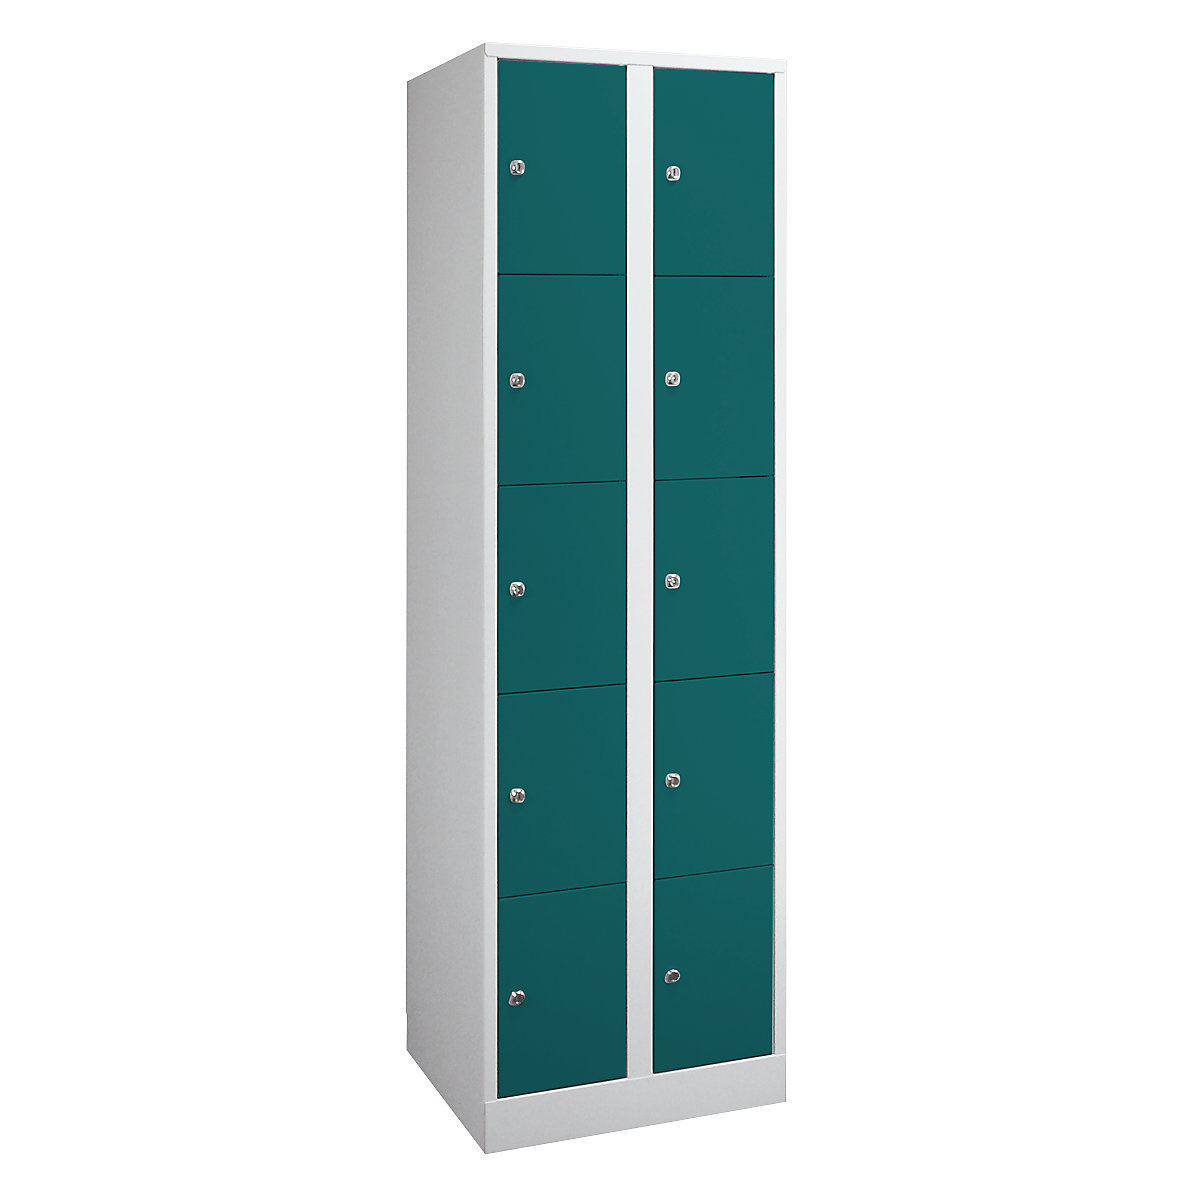 Wolf – Armoire à casiers verrouillables dimensions confort, 10 compartiments, largeur 600 mm, gris clair / vert opale